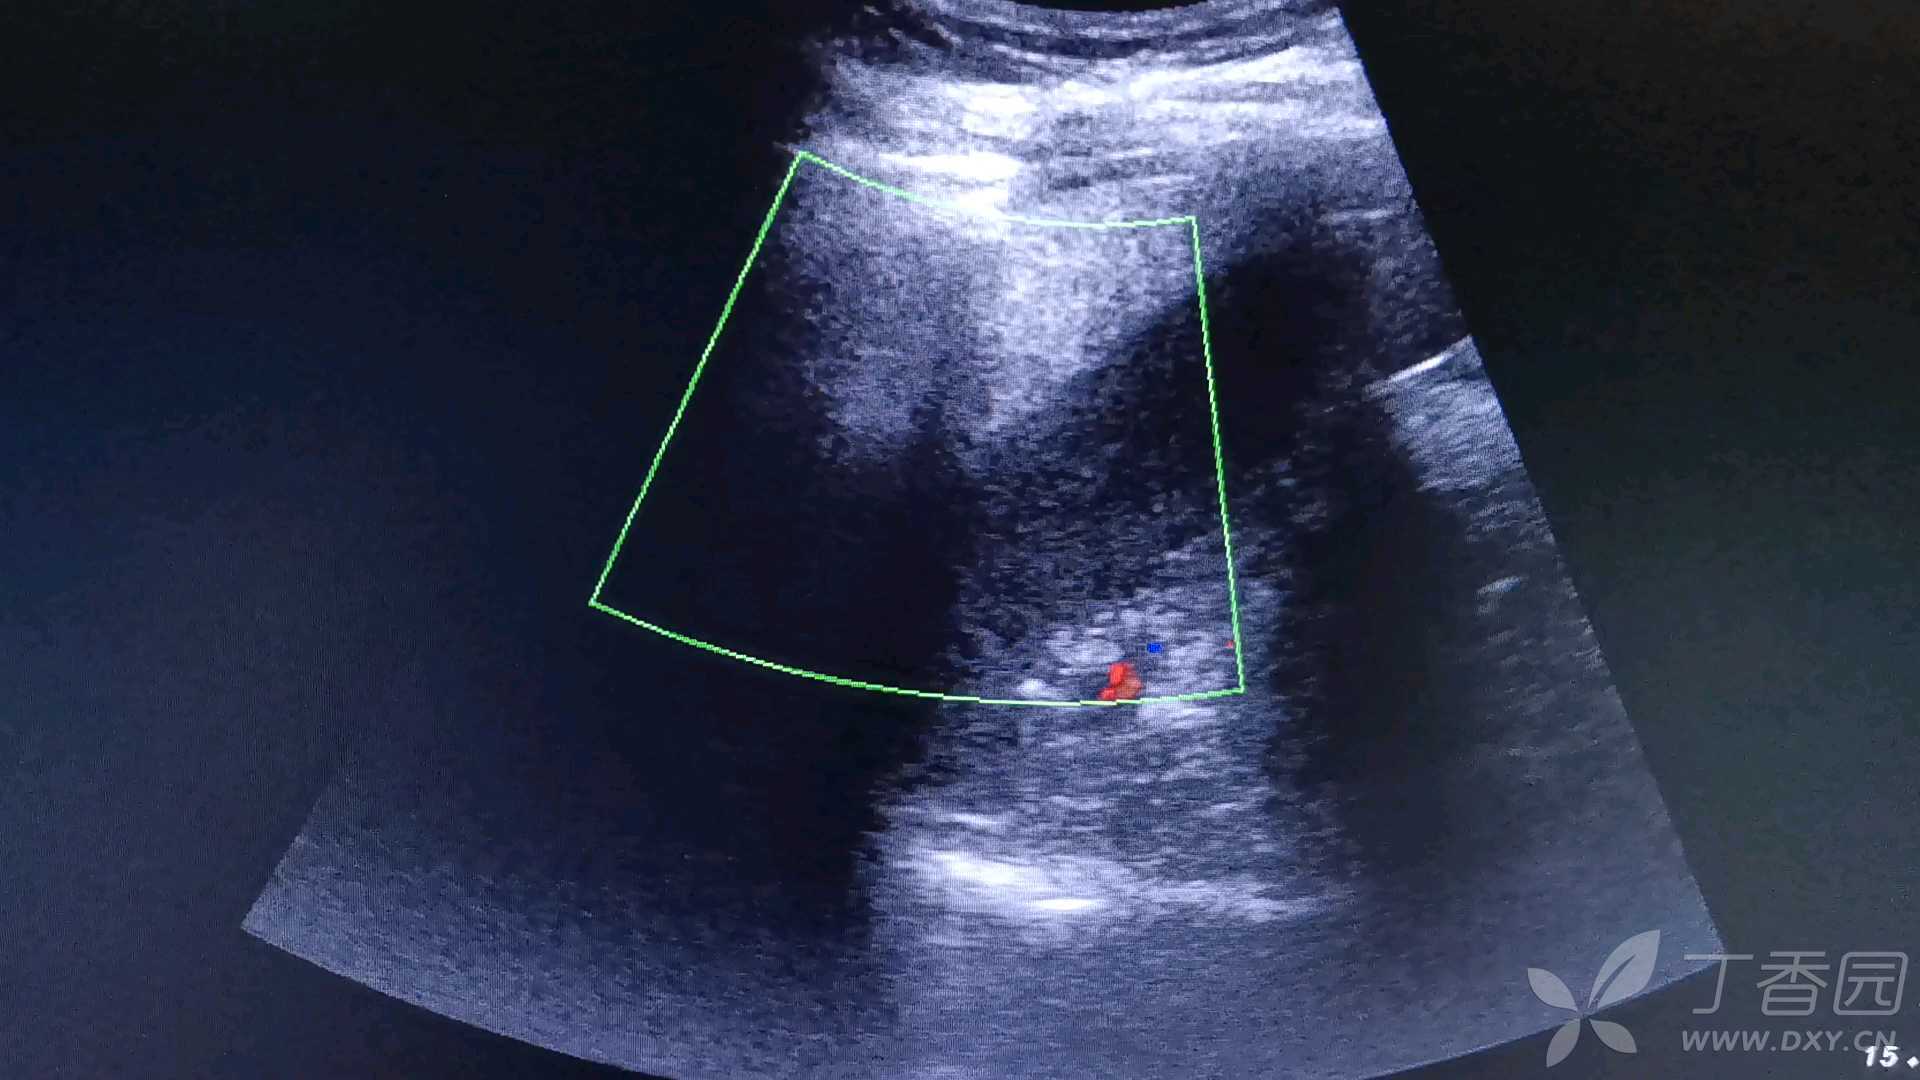 獭尾肝和正常肝图片图片